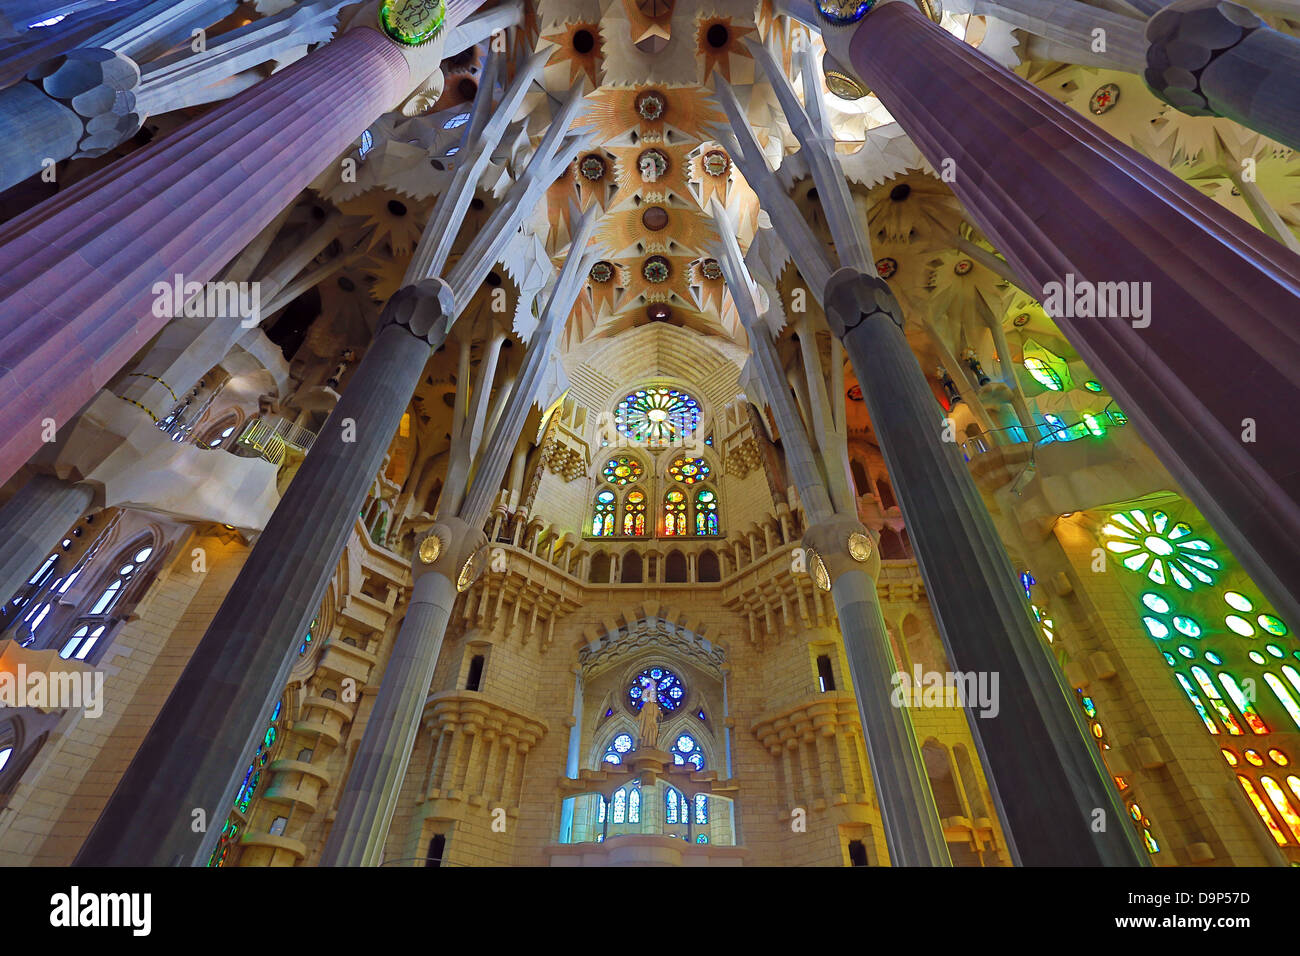 Interior of the Basilica de la Sagrada Familia cathedral in Barcelona ...